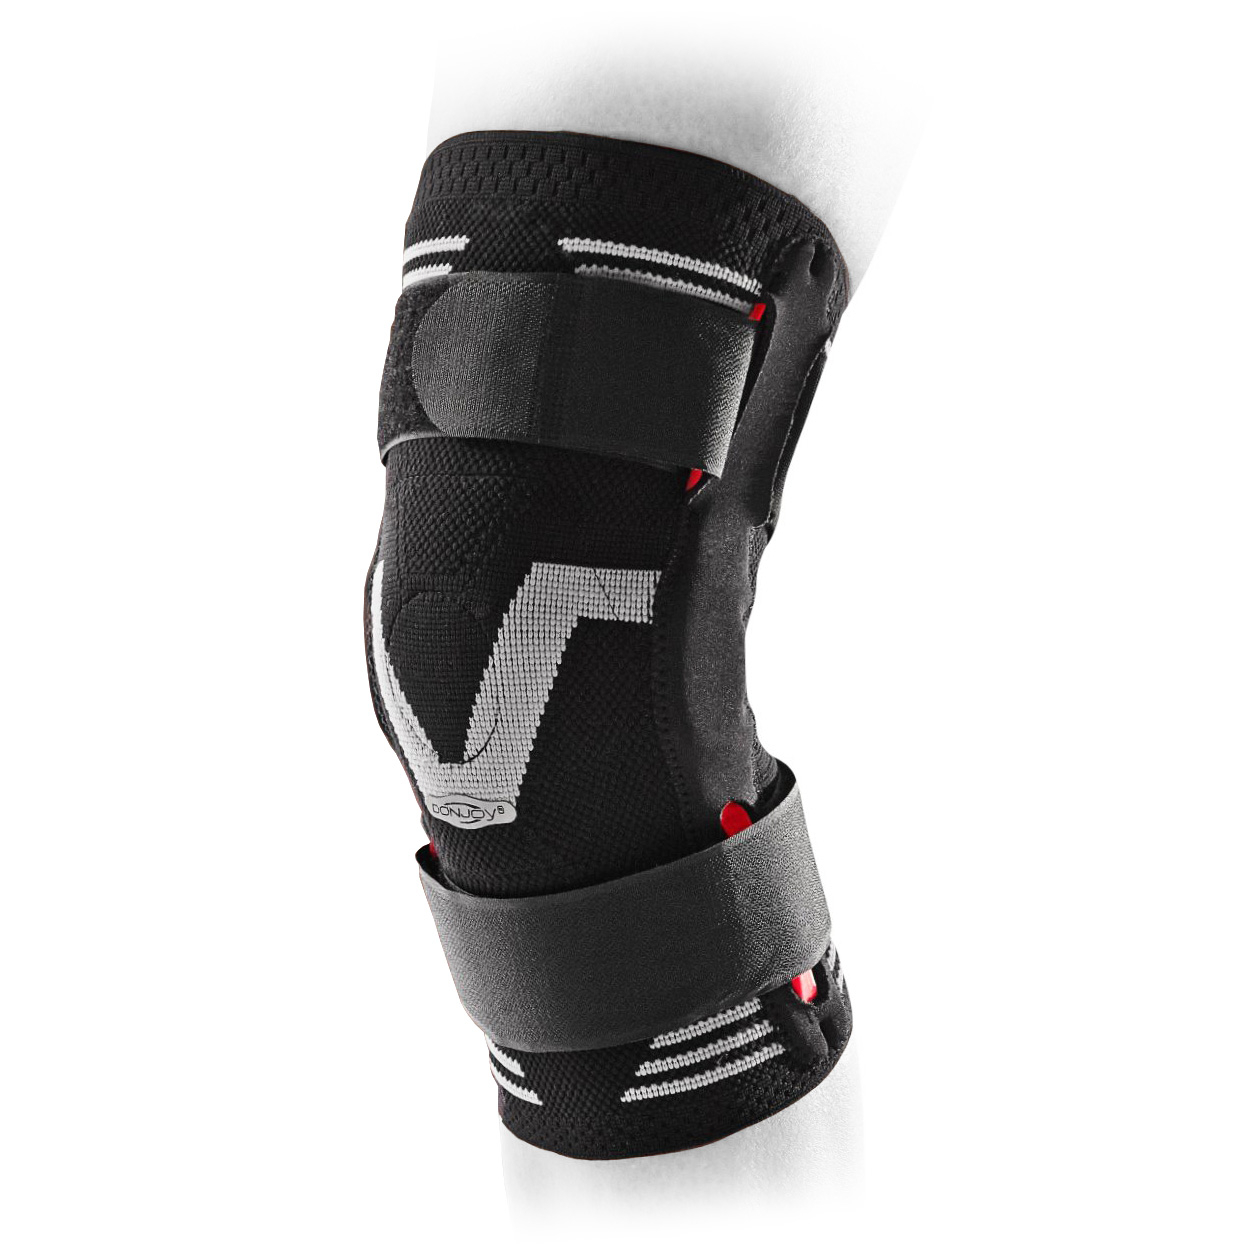 Tissu élastique de Protection des genoux, ajustable, en éponge épaisse,  genouillère pour l'exercice